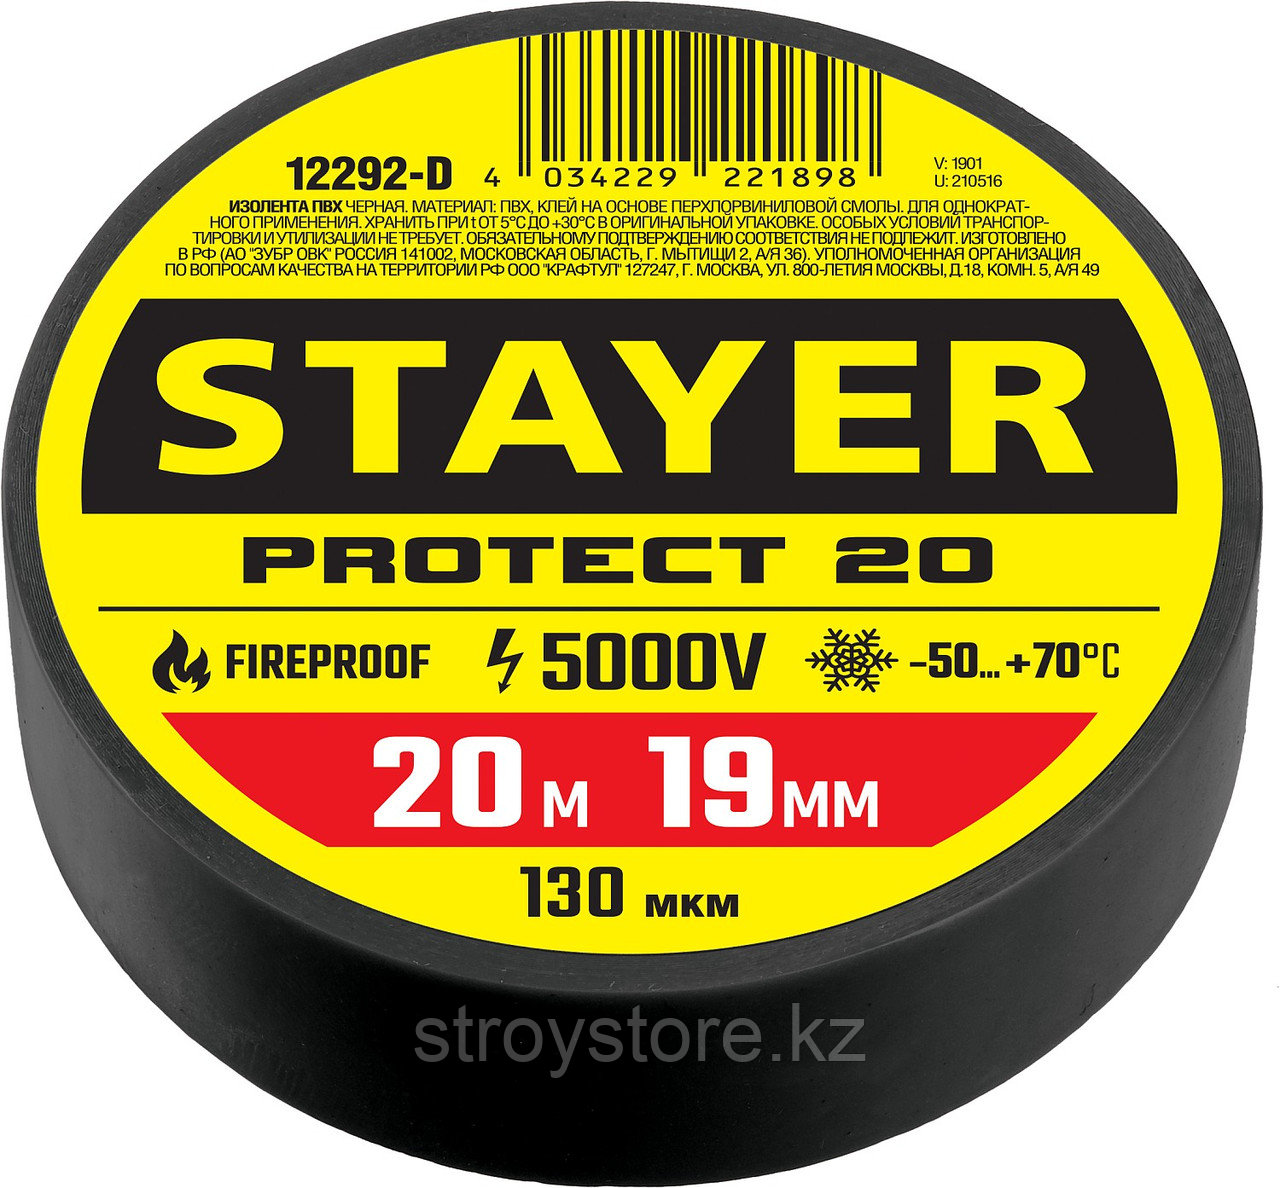 STAYER Protect-20 19 мм х 20 м черная, Изоляционная лента ПВХ, PROFESSIONAL (12292-D), фото 1